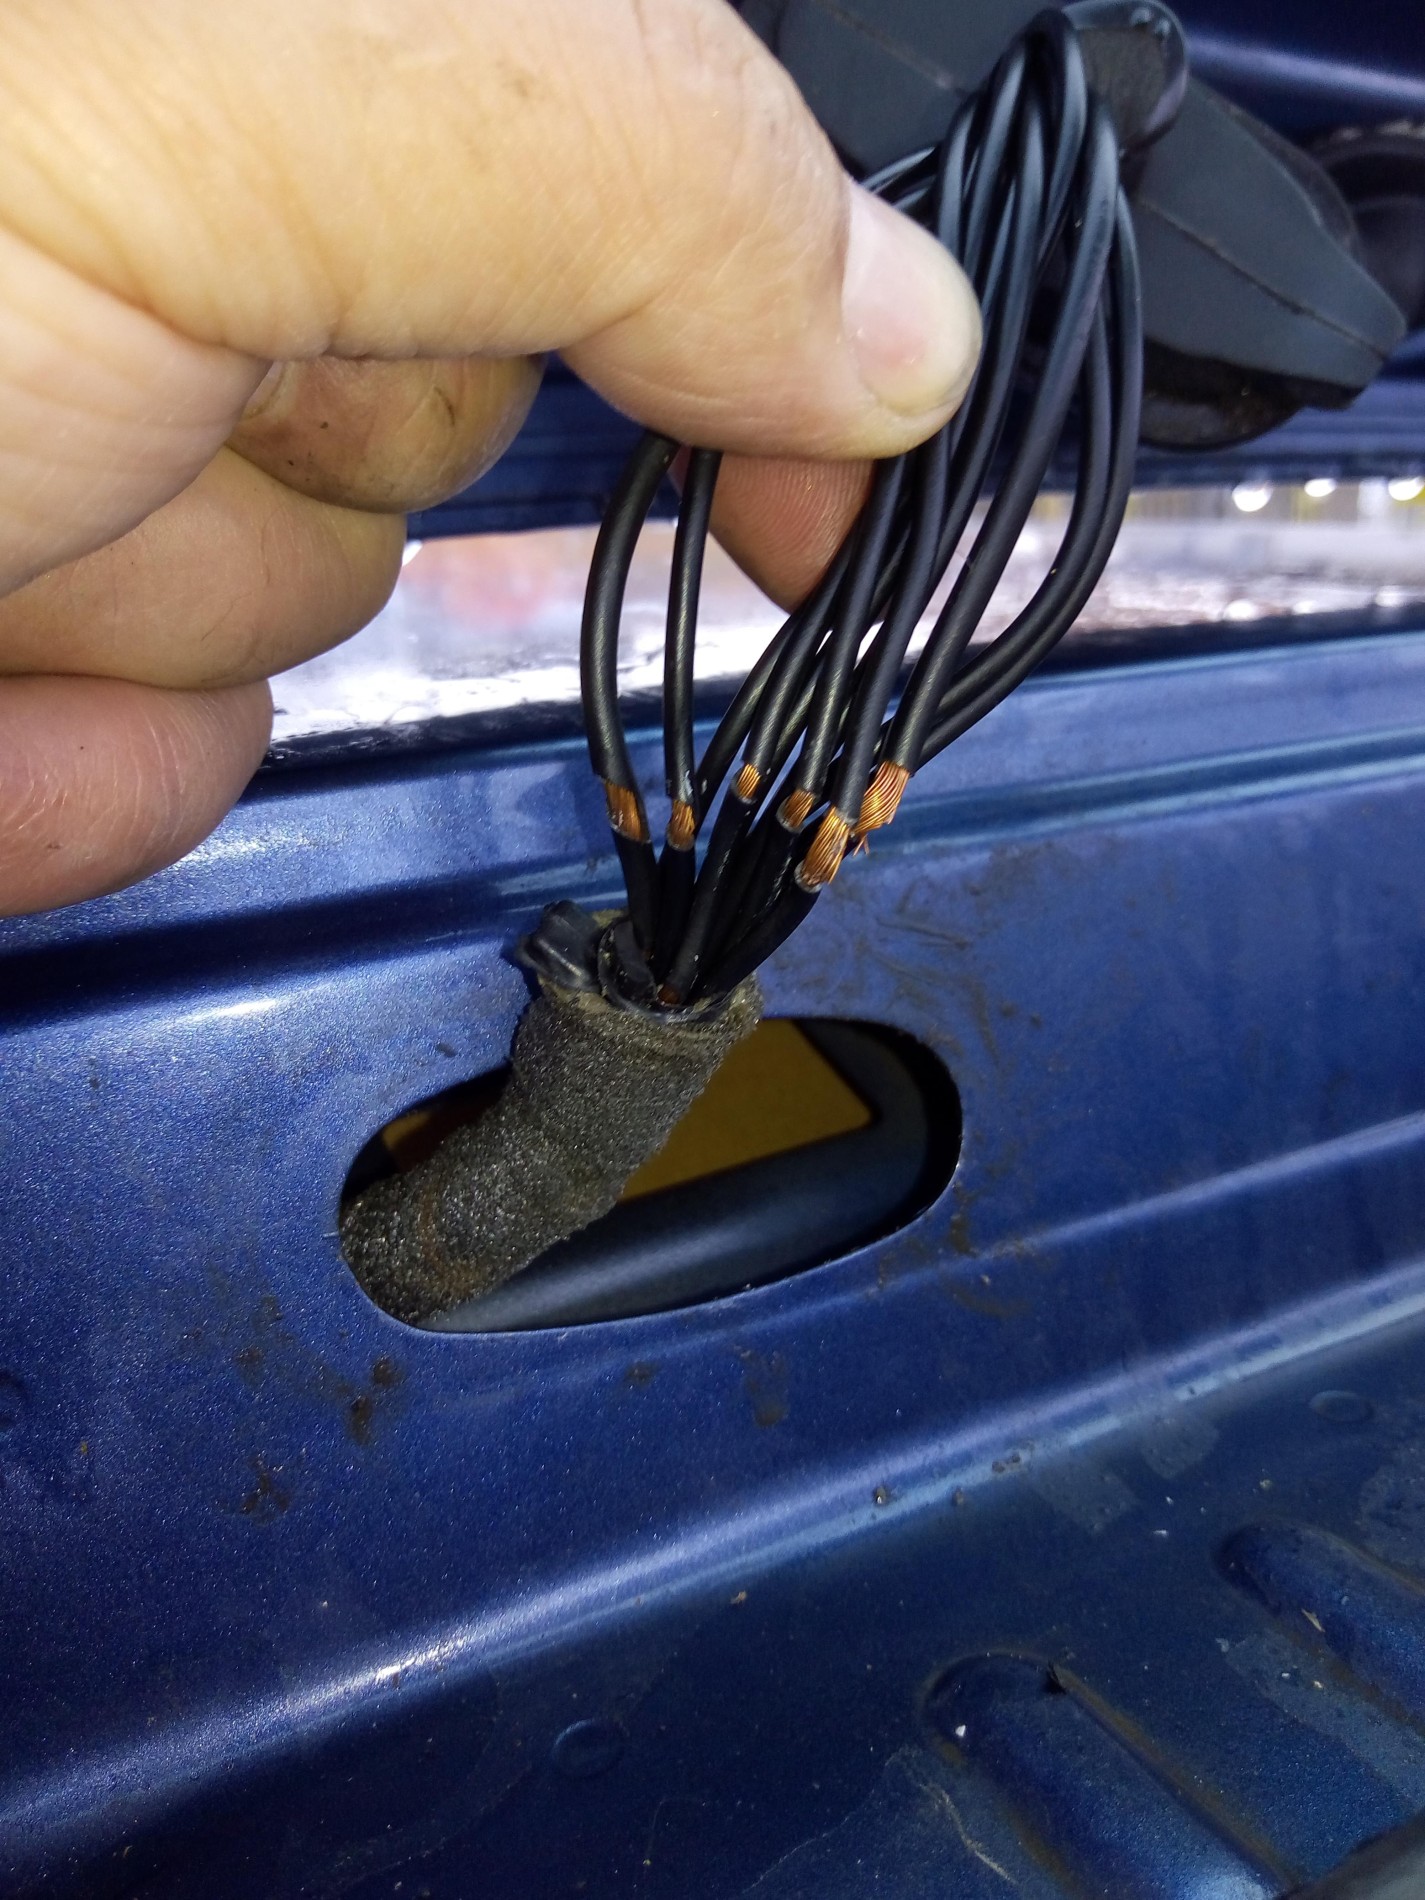 La un ford focus nu se mai deschide portbagajul din buton si nici din  telecomanda, ce ar putea fi? #104232 - 4Tuning Help